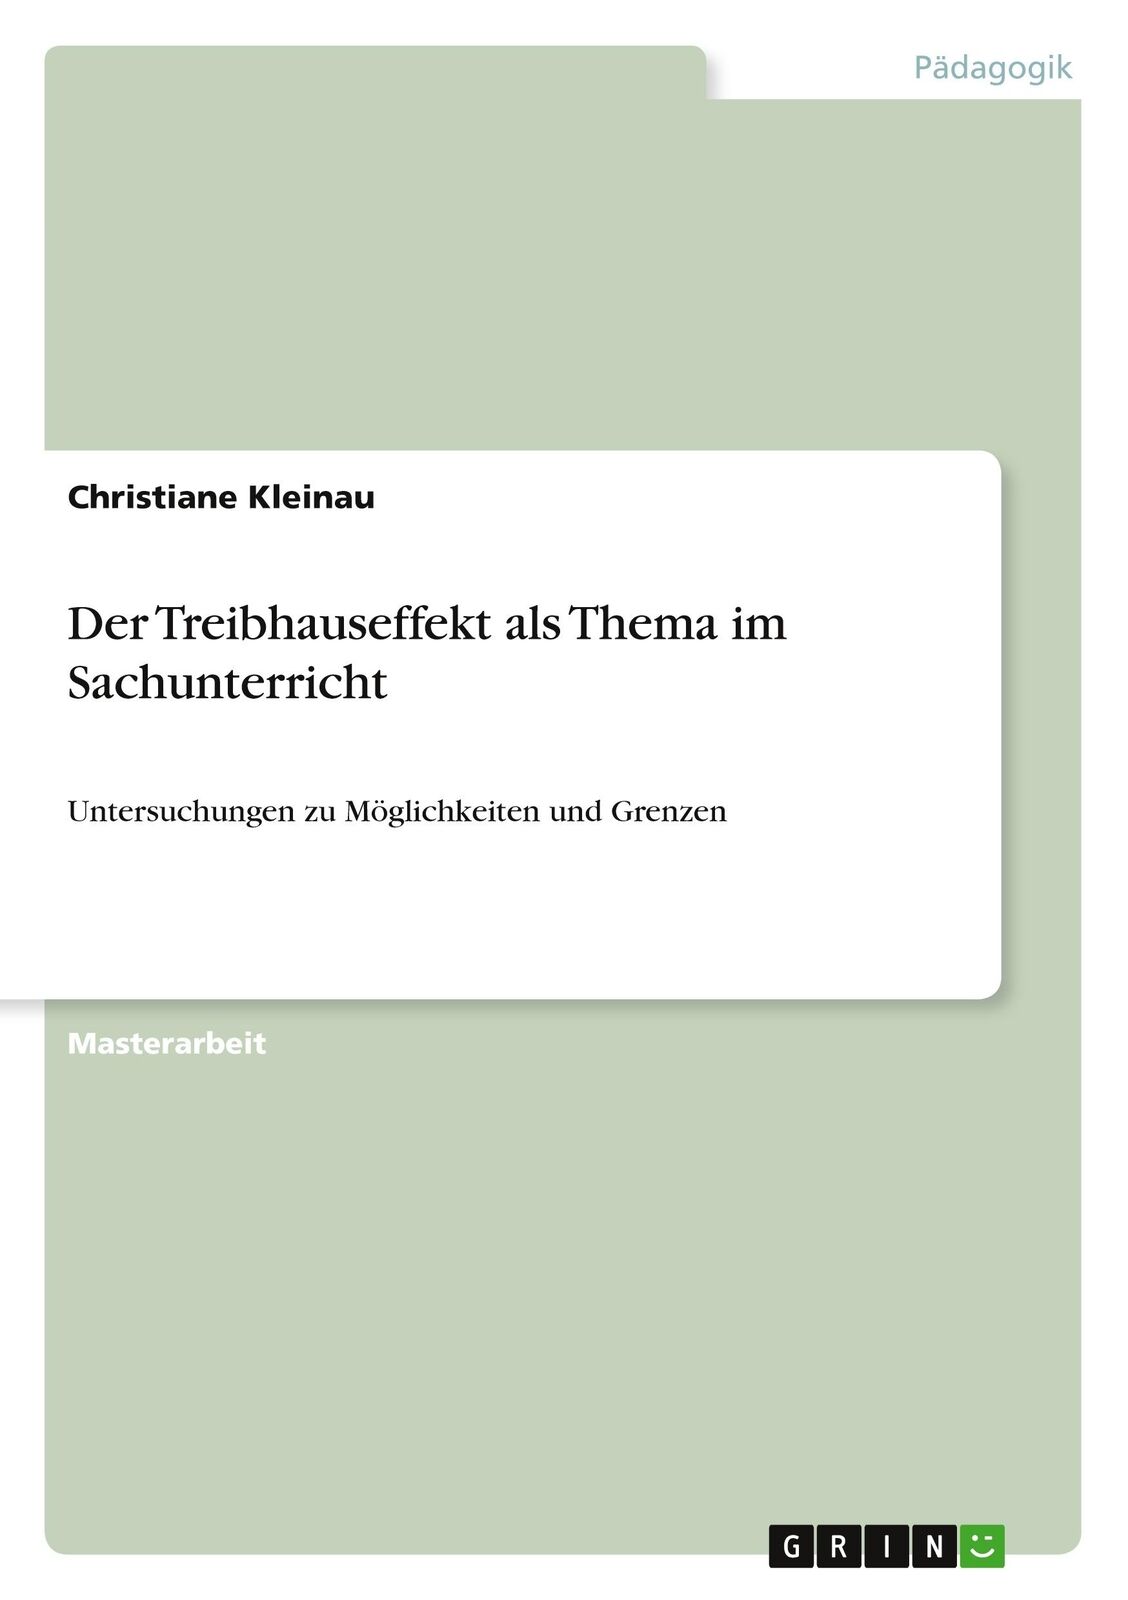 Der Treibhauseffekt als Thema im Sachunterricht | Buch | 9783656317883 - Kleinau, Christiane